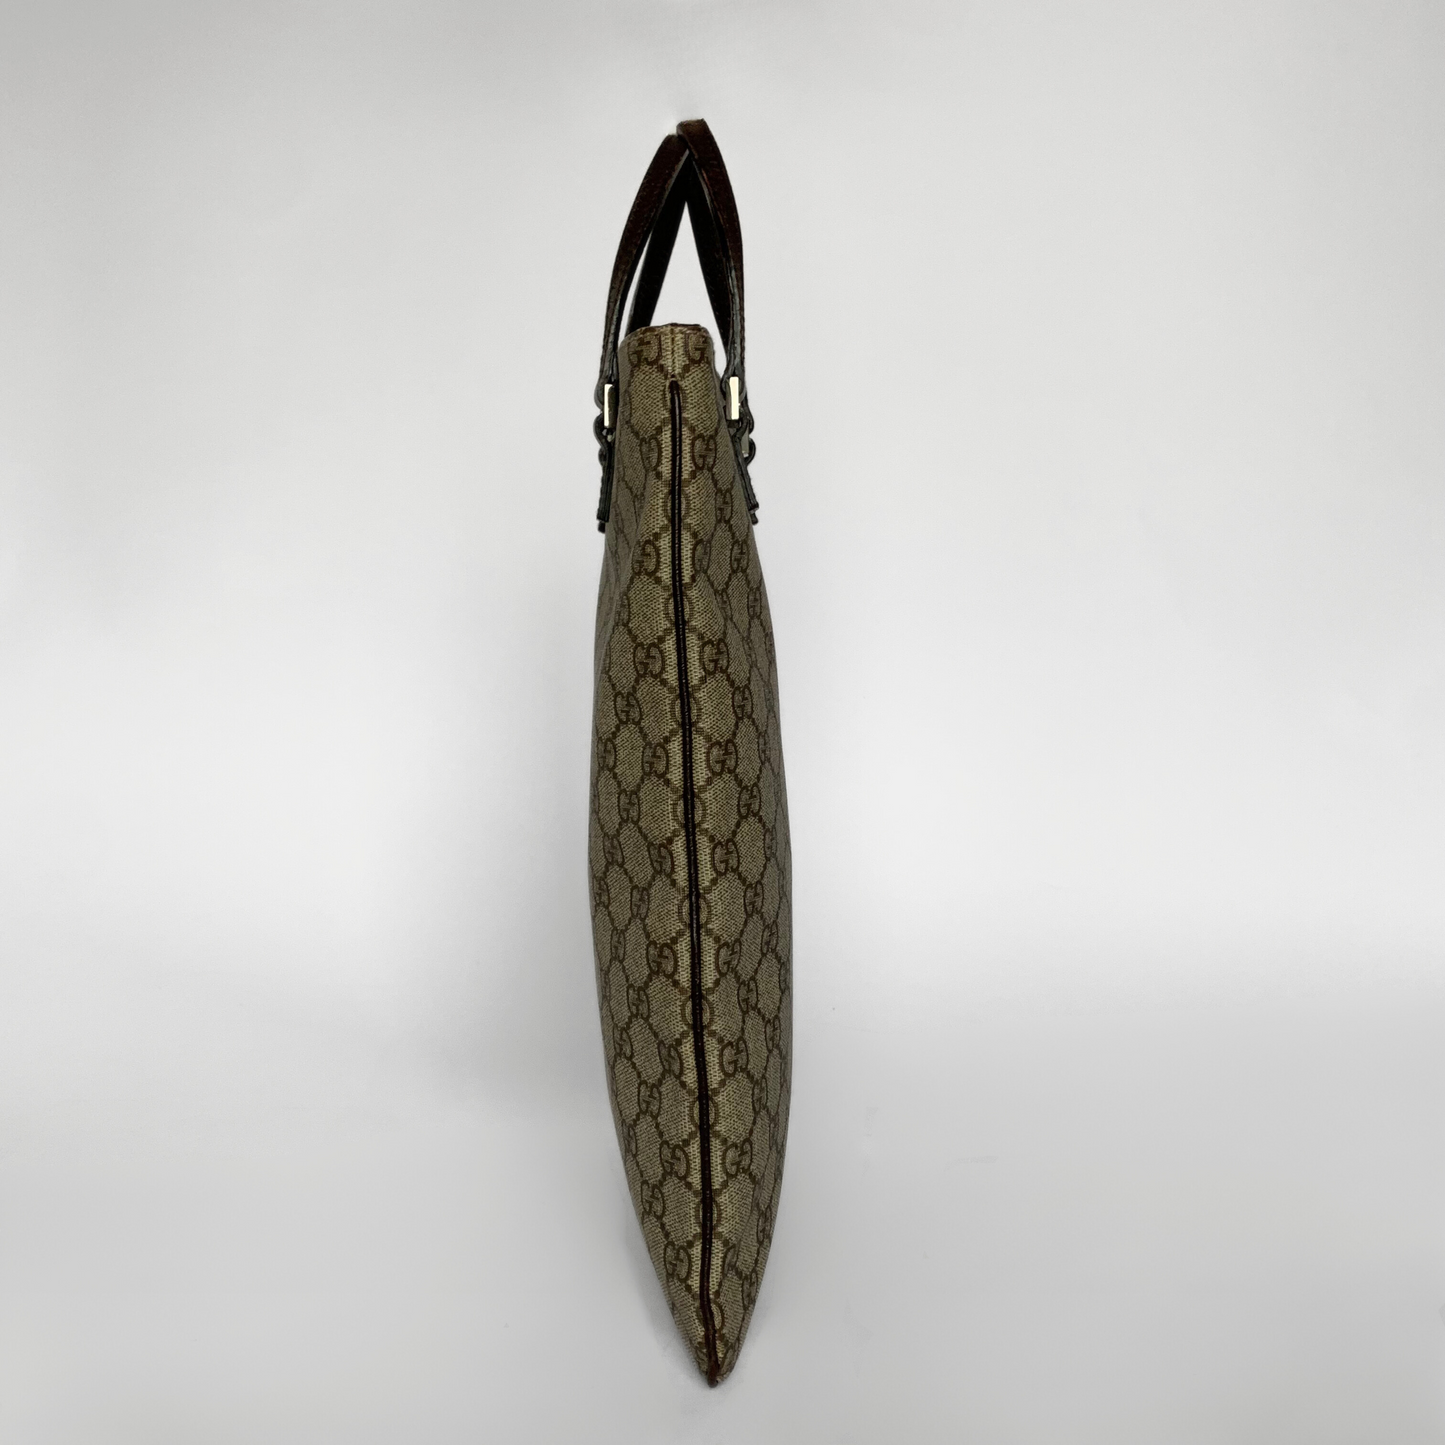 Gucci Gucci Torba materiałowa Supreme GG Canvas - Torebki - Etoile Luxury Vintage